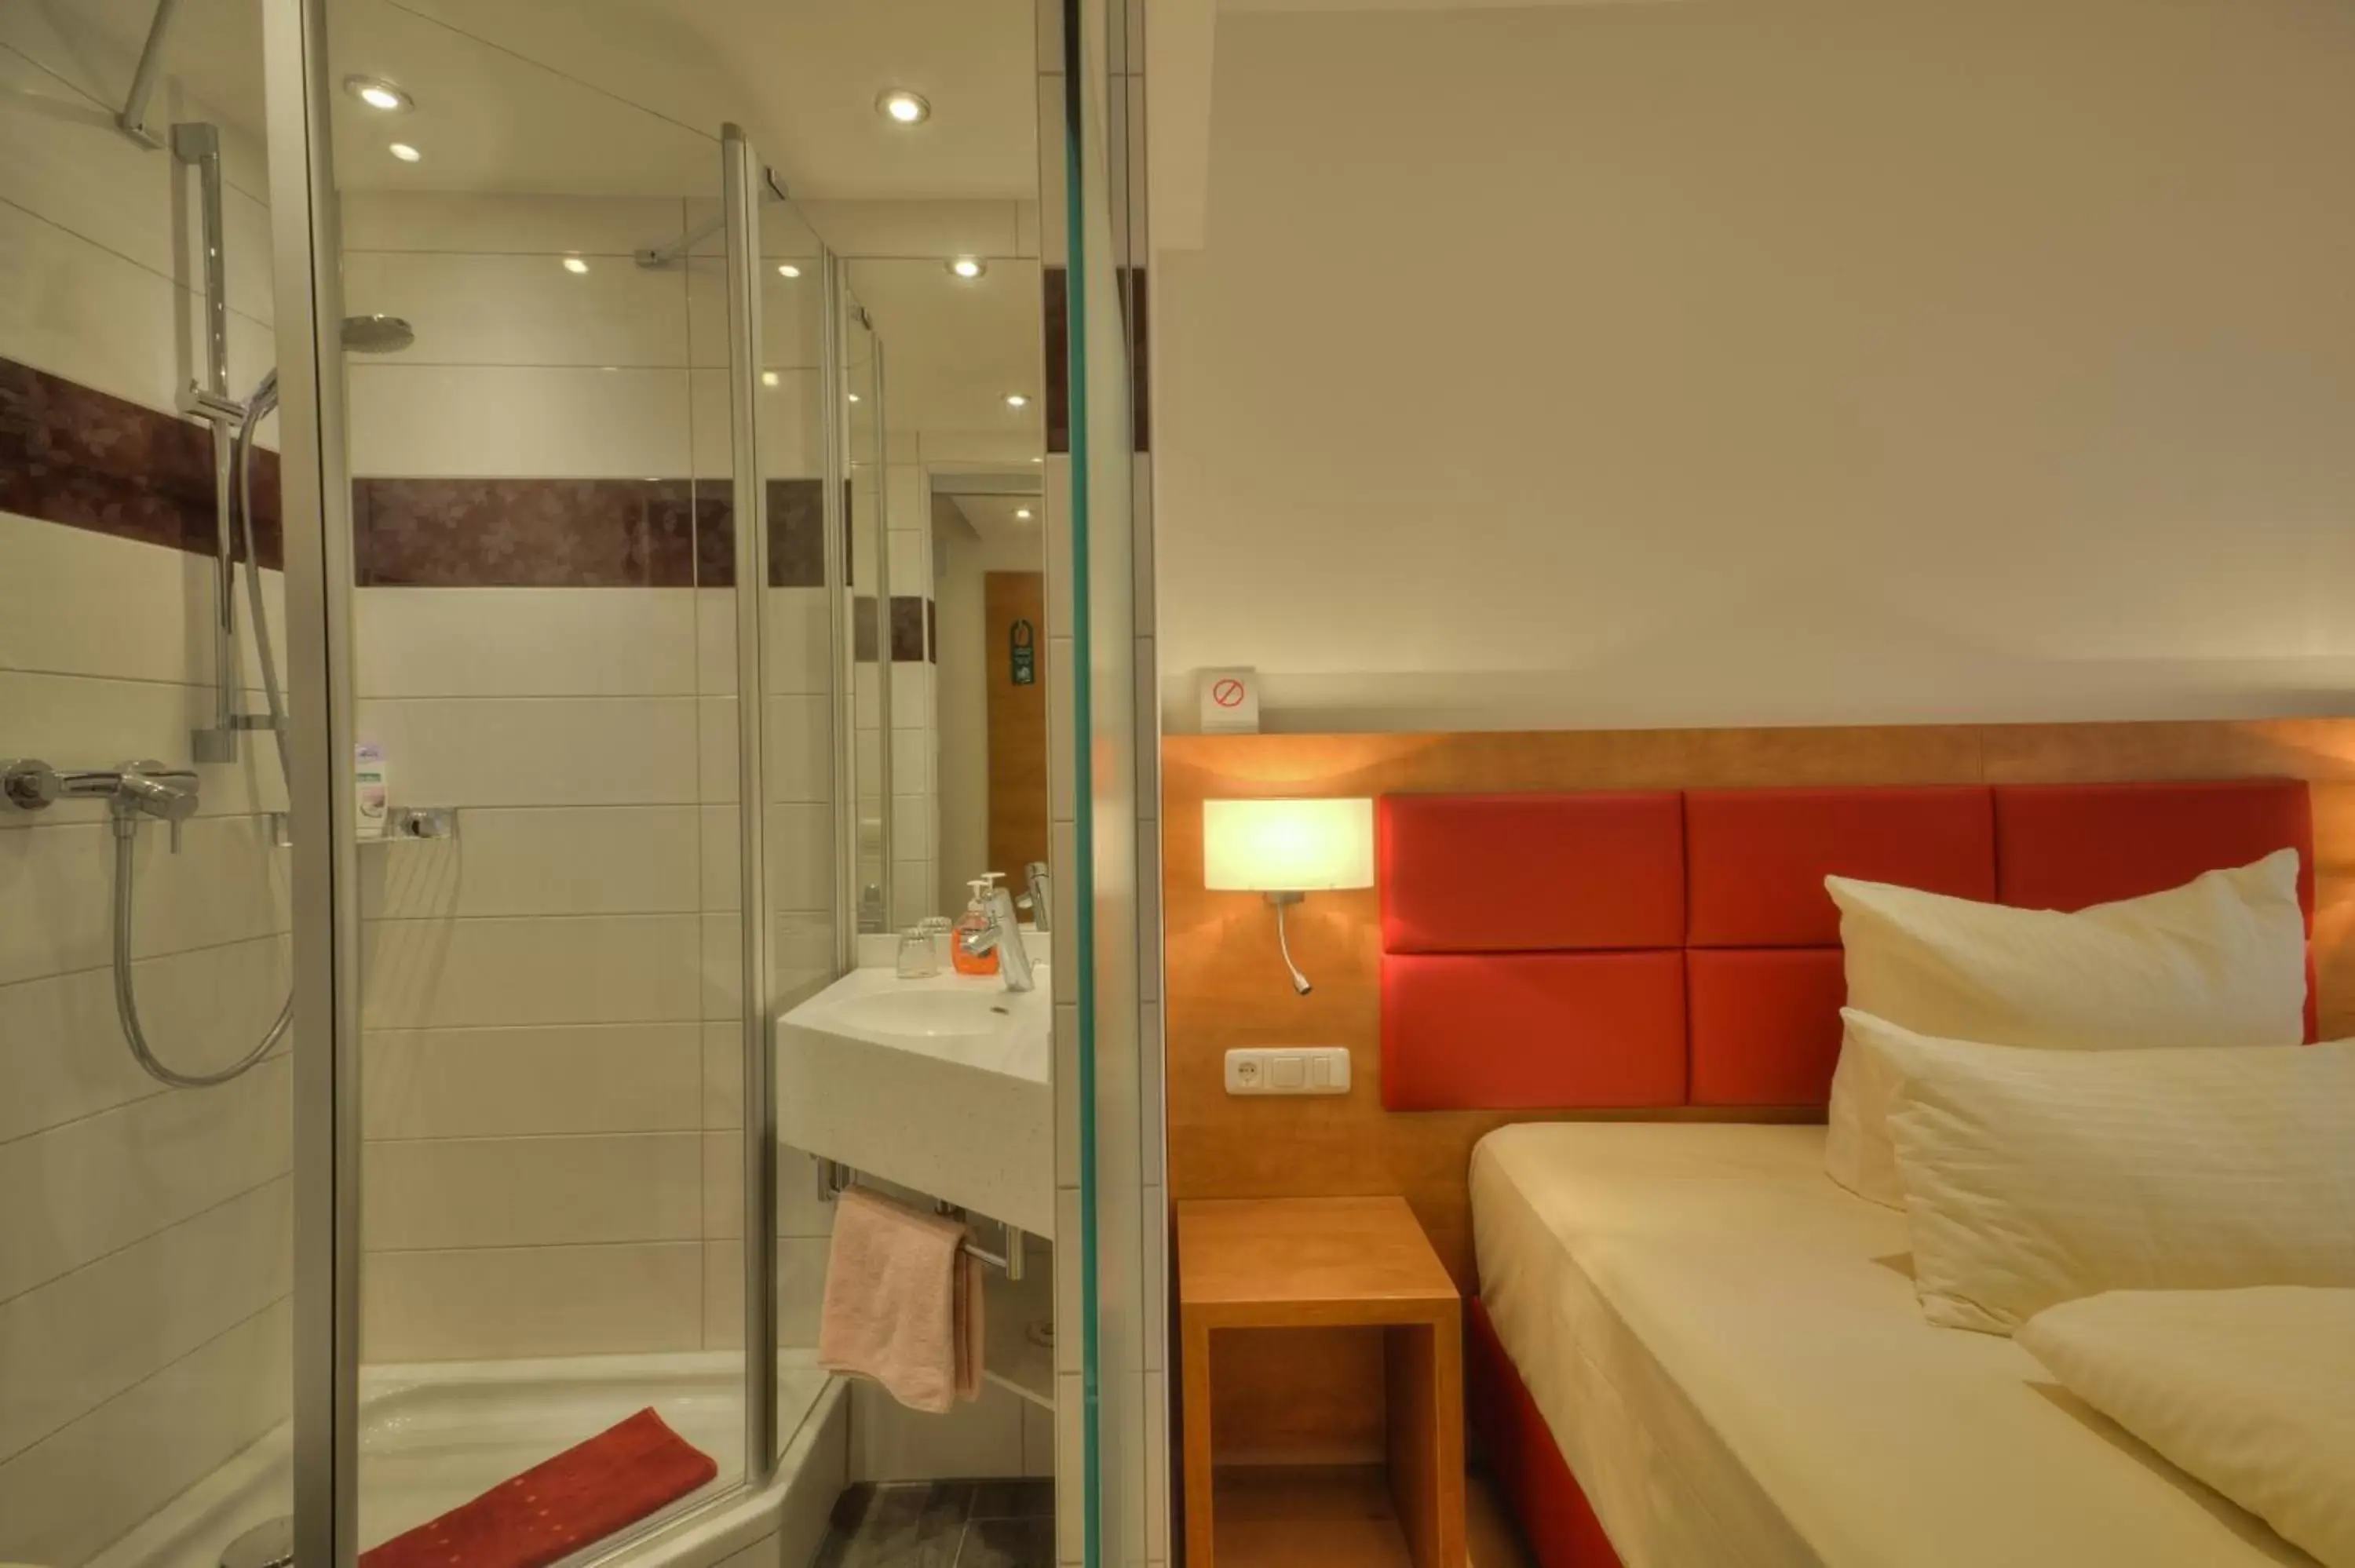 Decorative detail, Bathroom in Hotel Condor